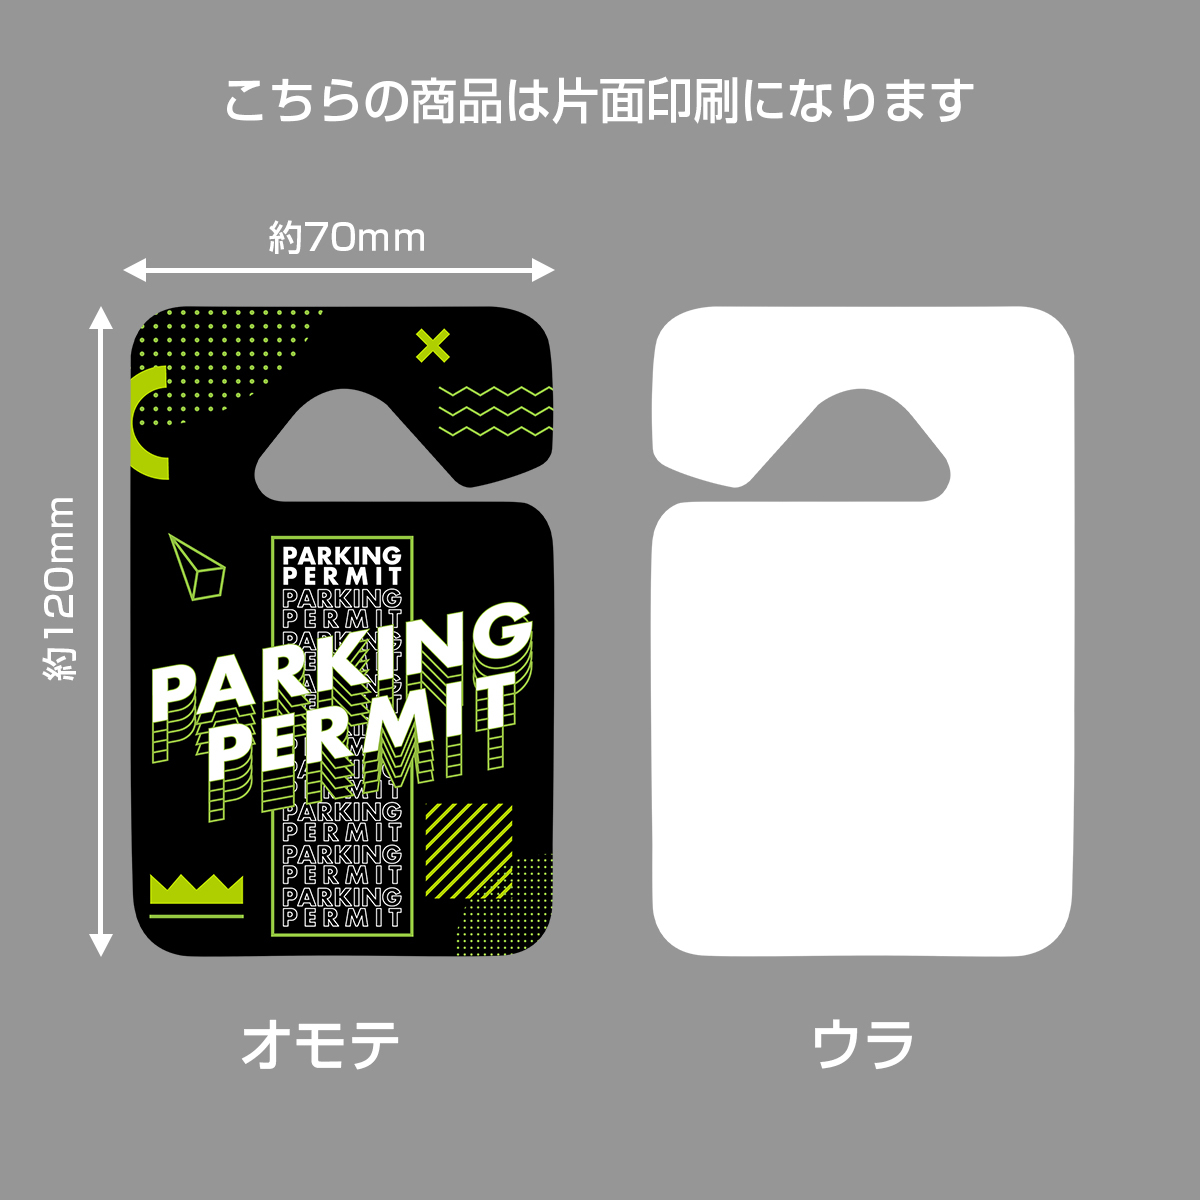 パーキングパーミット 駐車許可証 片面デザイン カーアクセサリー ルームミラー セキュリティー デザインD(印刷)_画像3